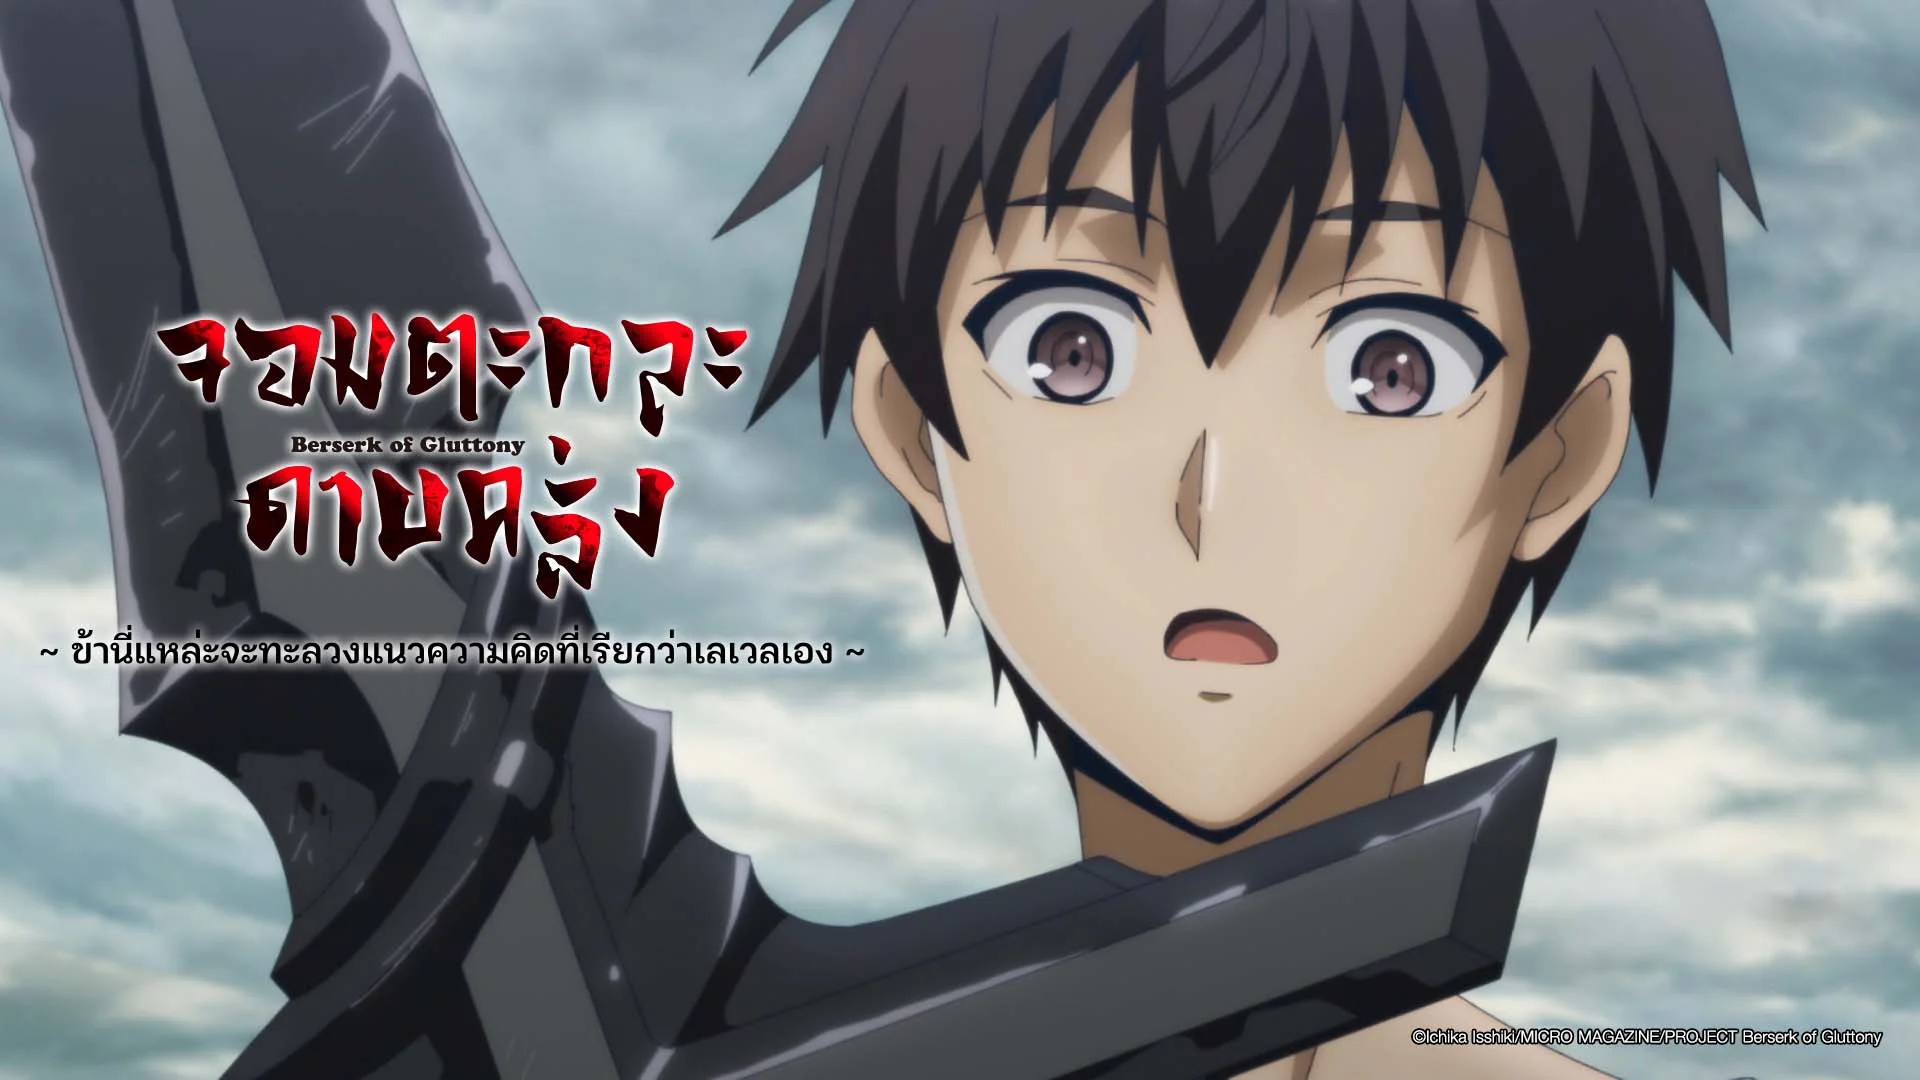 Berserk of Gluttony Anime: New trailer for the fantasy series • AWSMONE